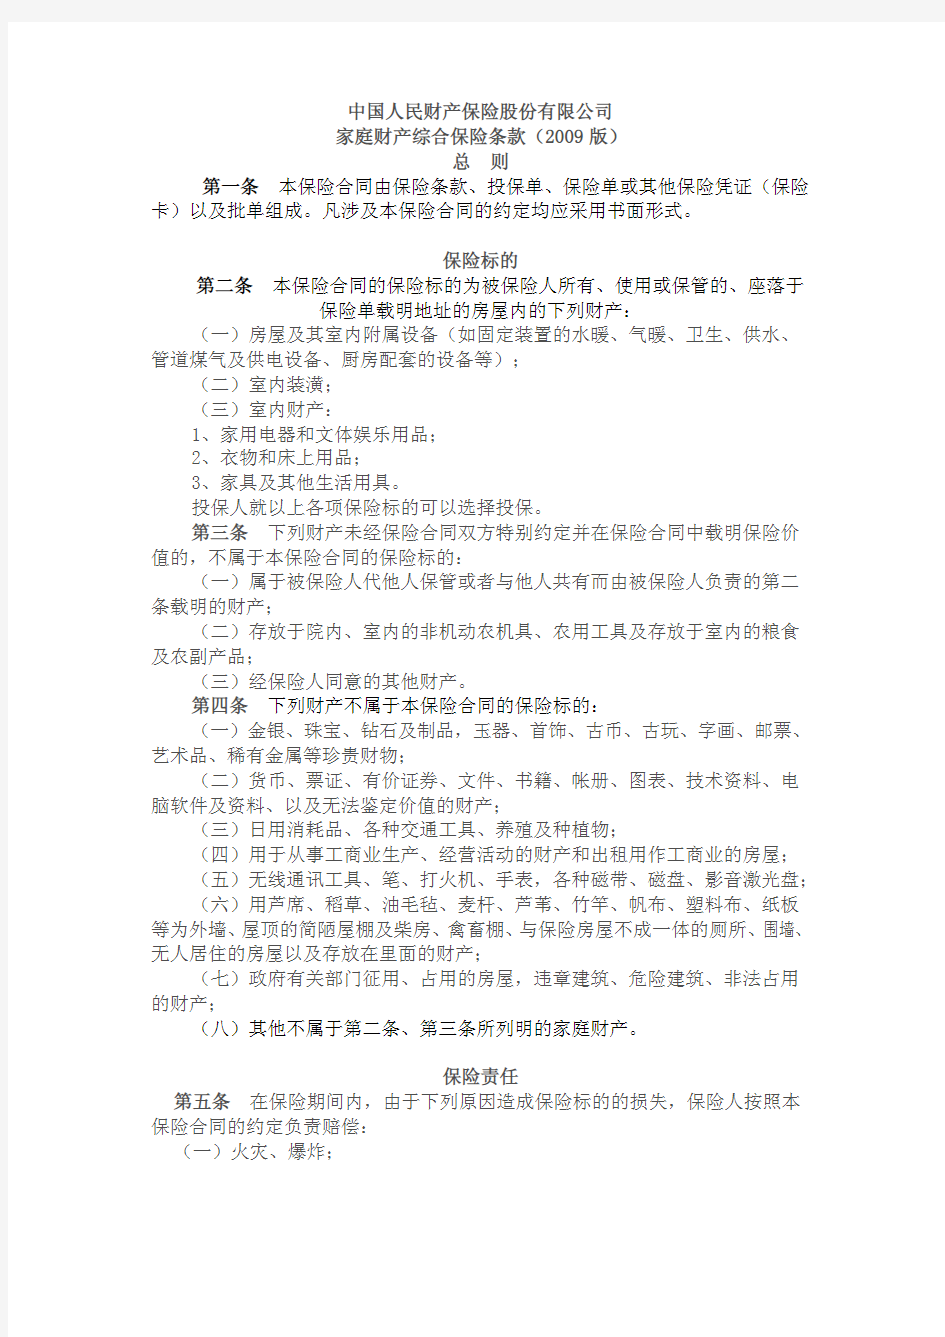 中国人民财产保险股份有限公司 家庭财产综合保险条款(